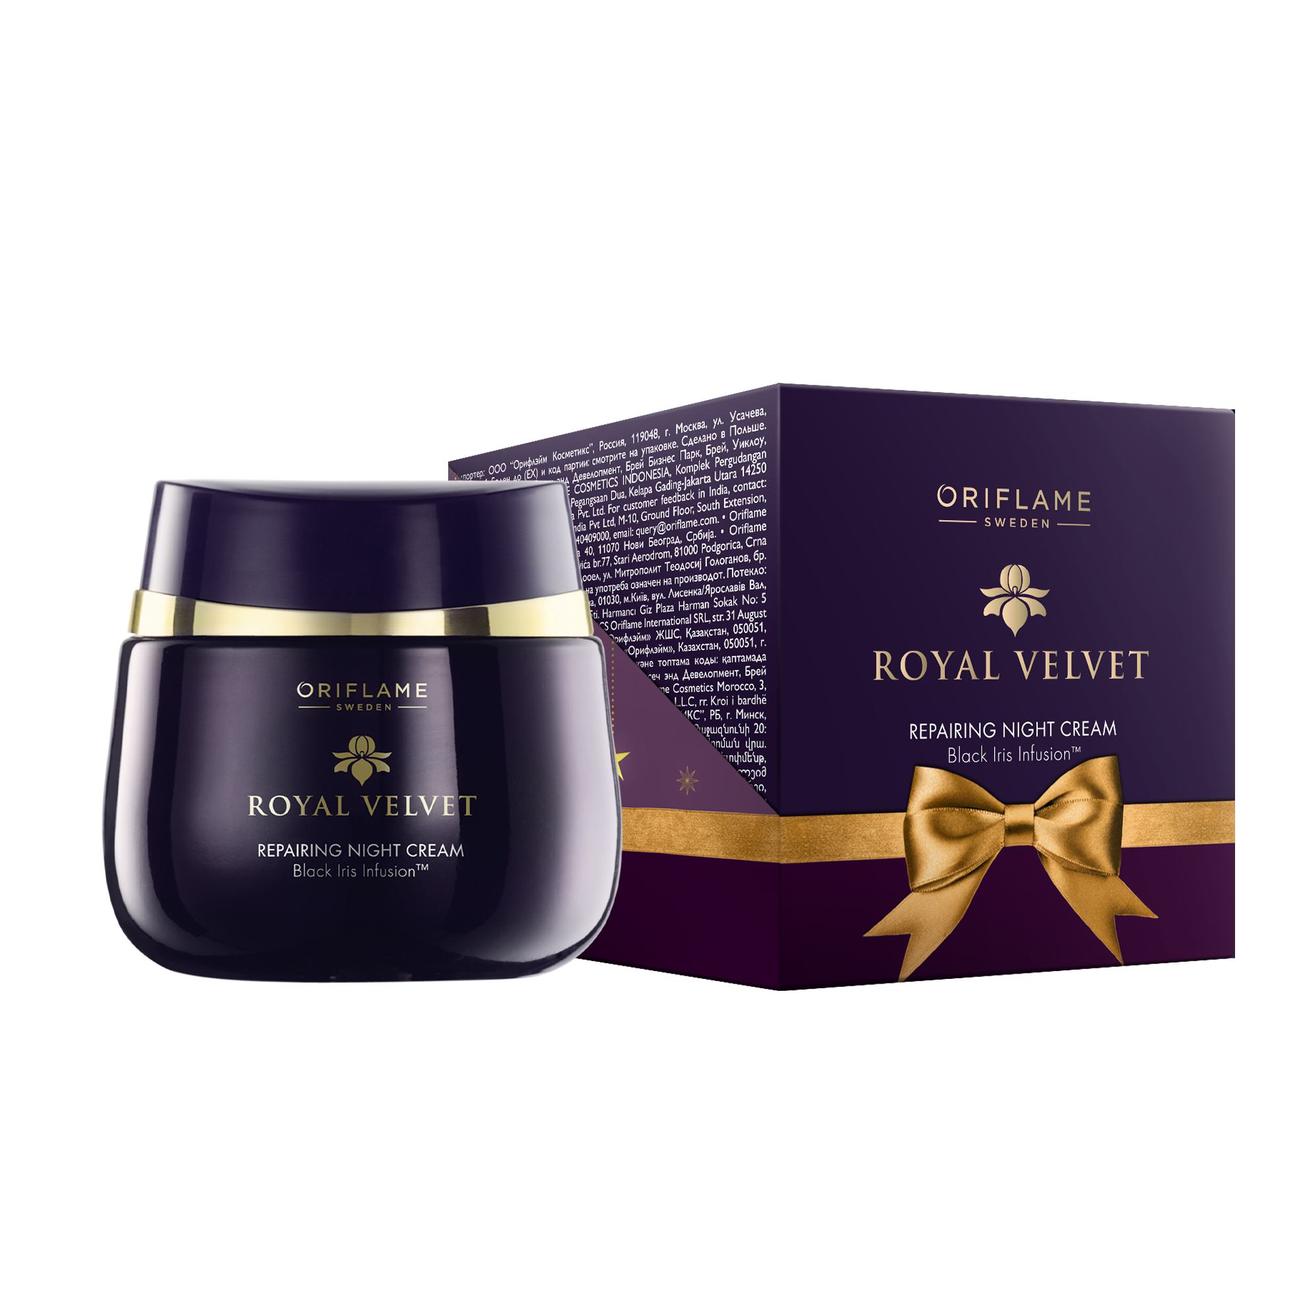 Obnovujúci nočný krém Royal Velvet - limitovaná edícia v akcii za 9,99€ v Oriflame